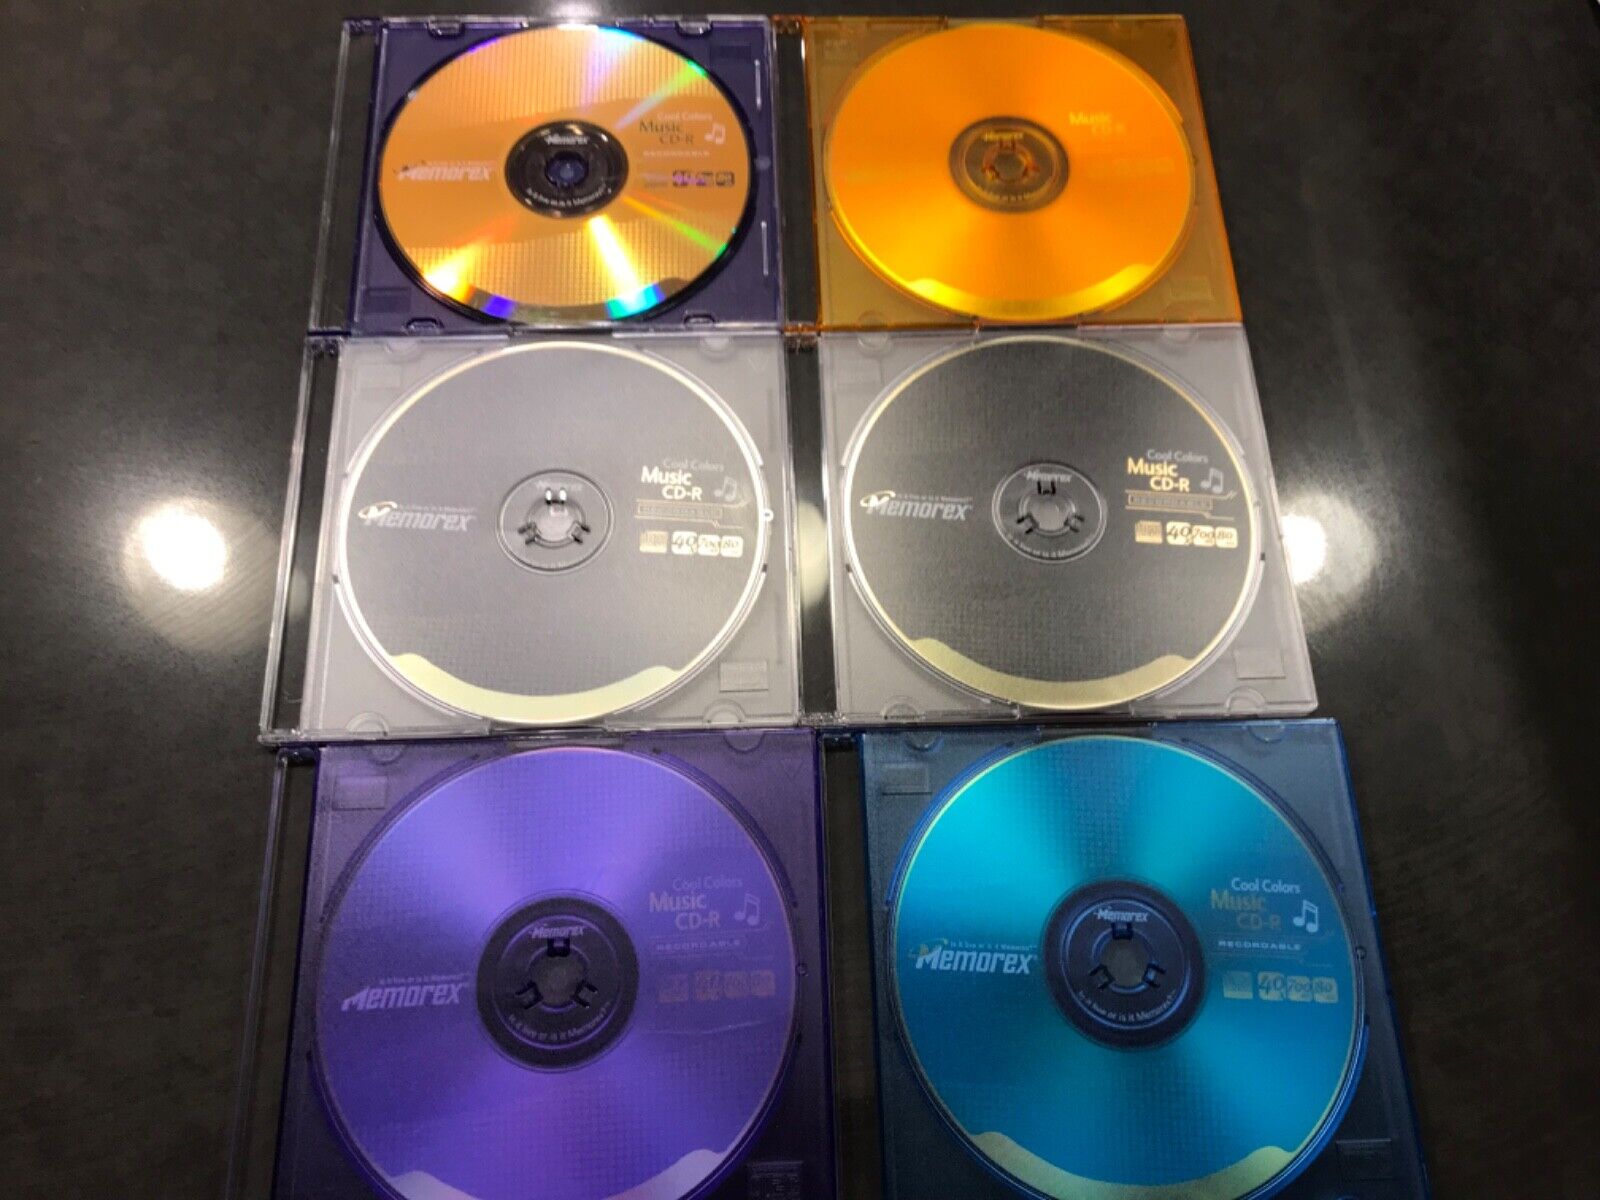 6 Memorex CD-R Cool Colors CD-R 40x 700 MB 80 Minutes